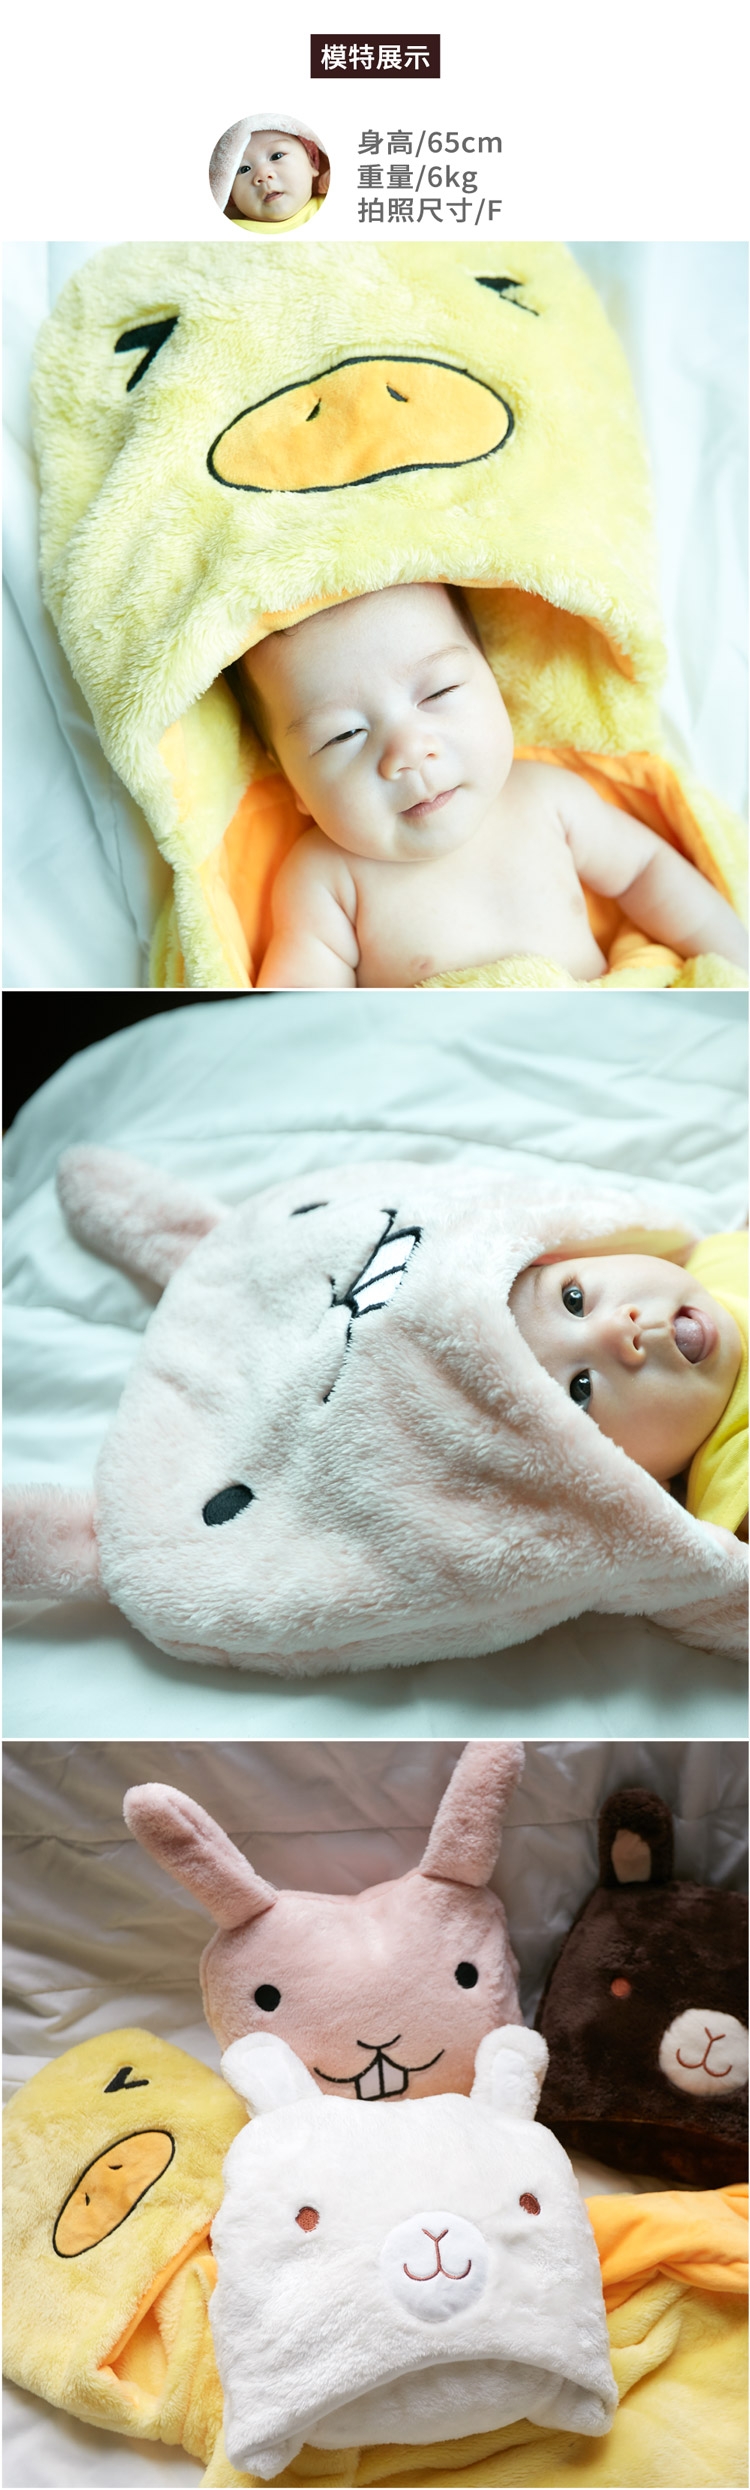 Baby 童衣 嬰兒套頭包被 抱毯 草泥馬造型羊羔絨抱被 92021(共四色)